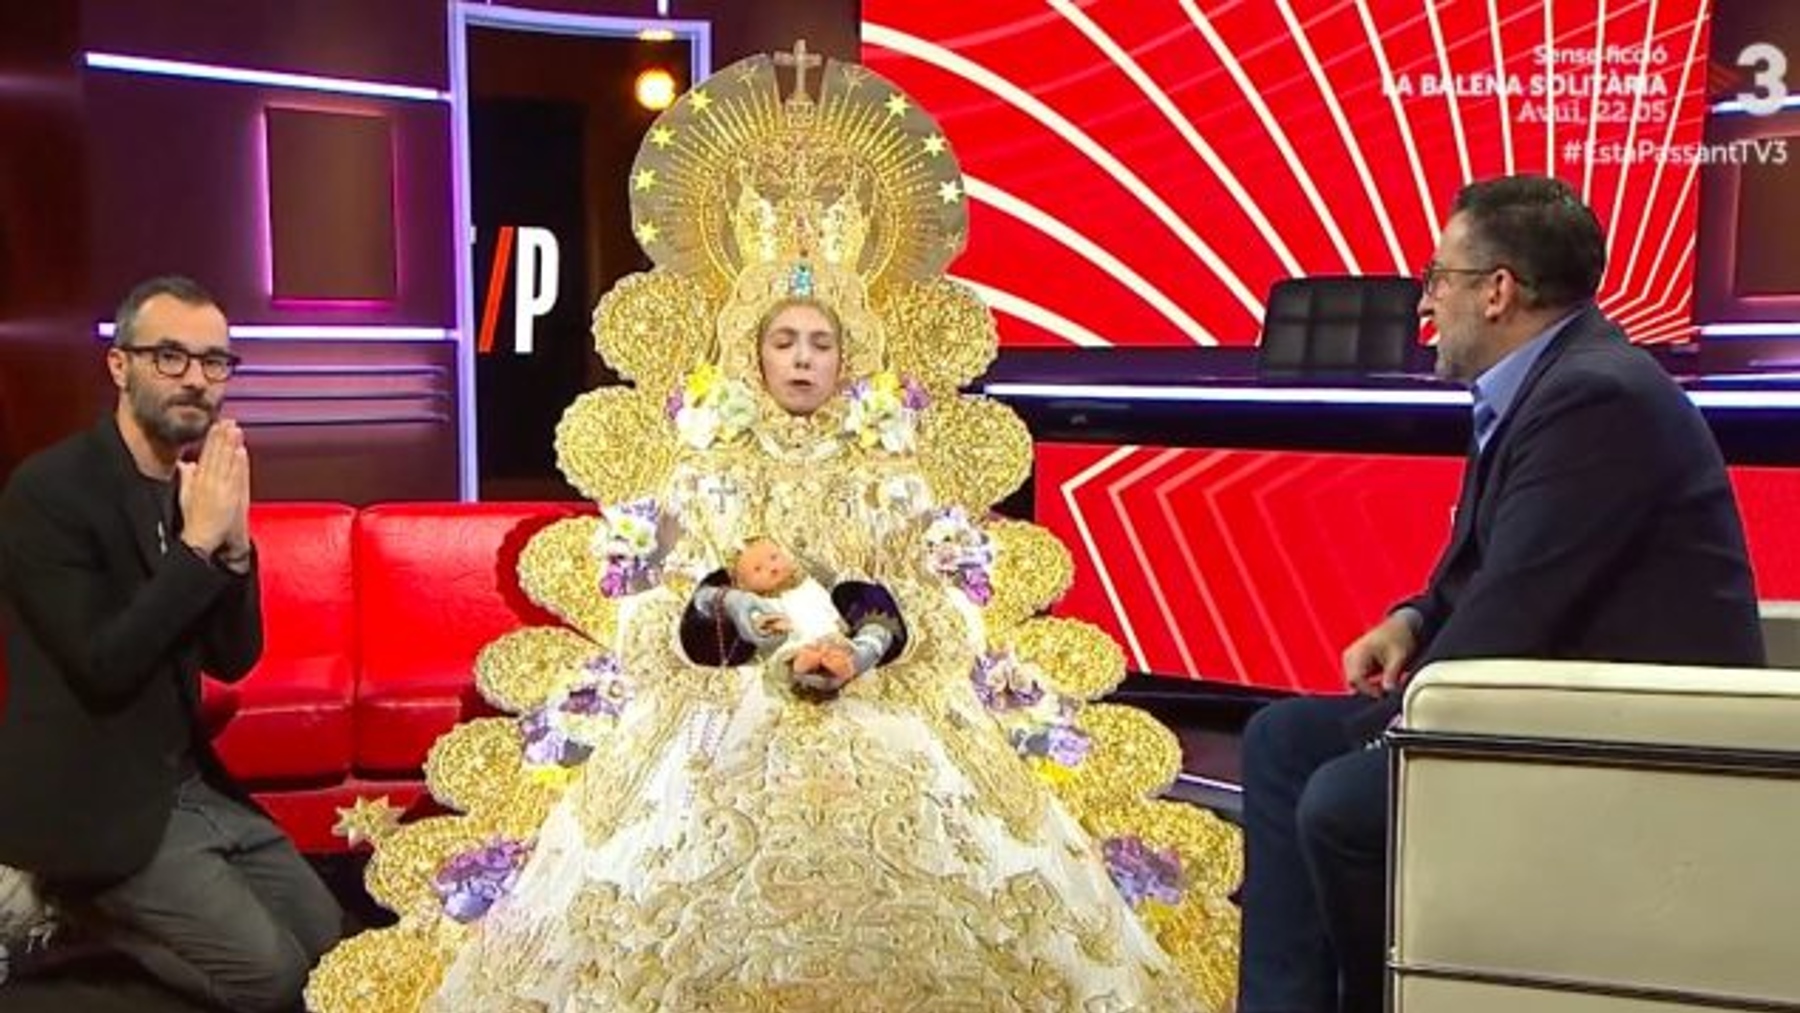 Parodia de los ‘cómicos’ de ‘TV3’ humillando a la Virgen del Rocío.